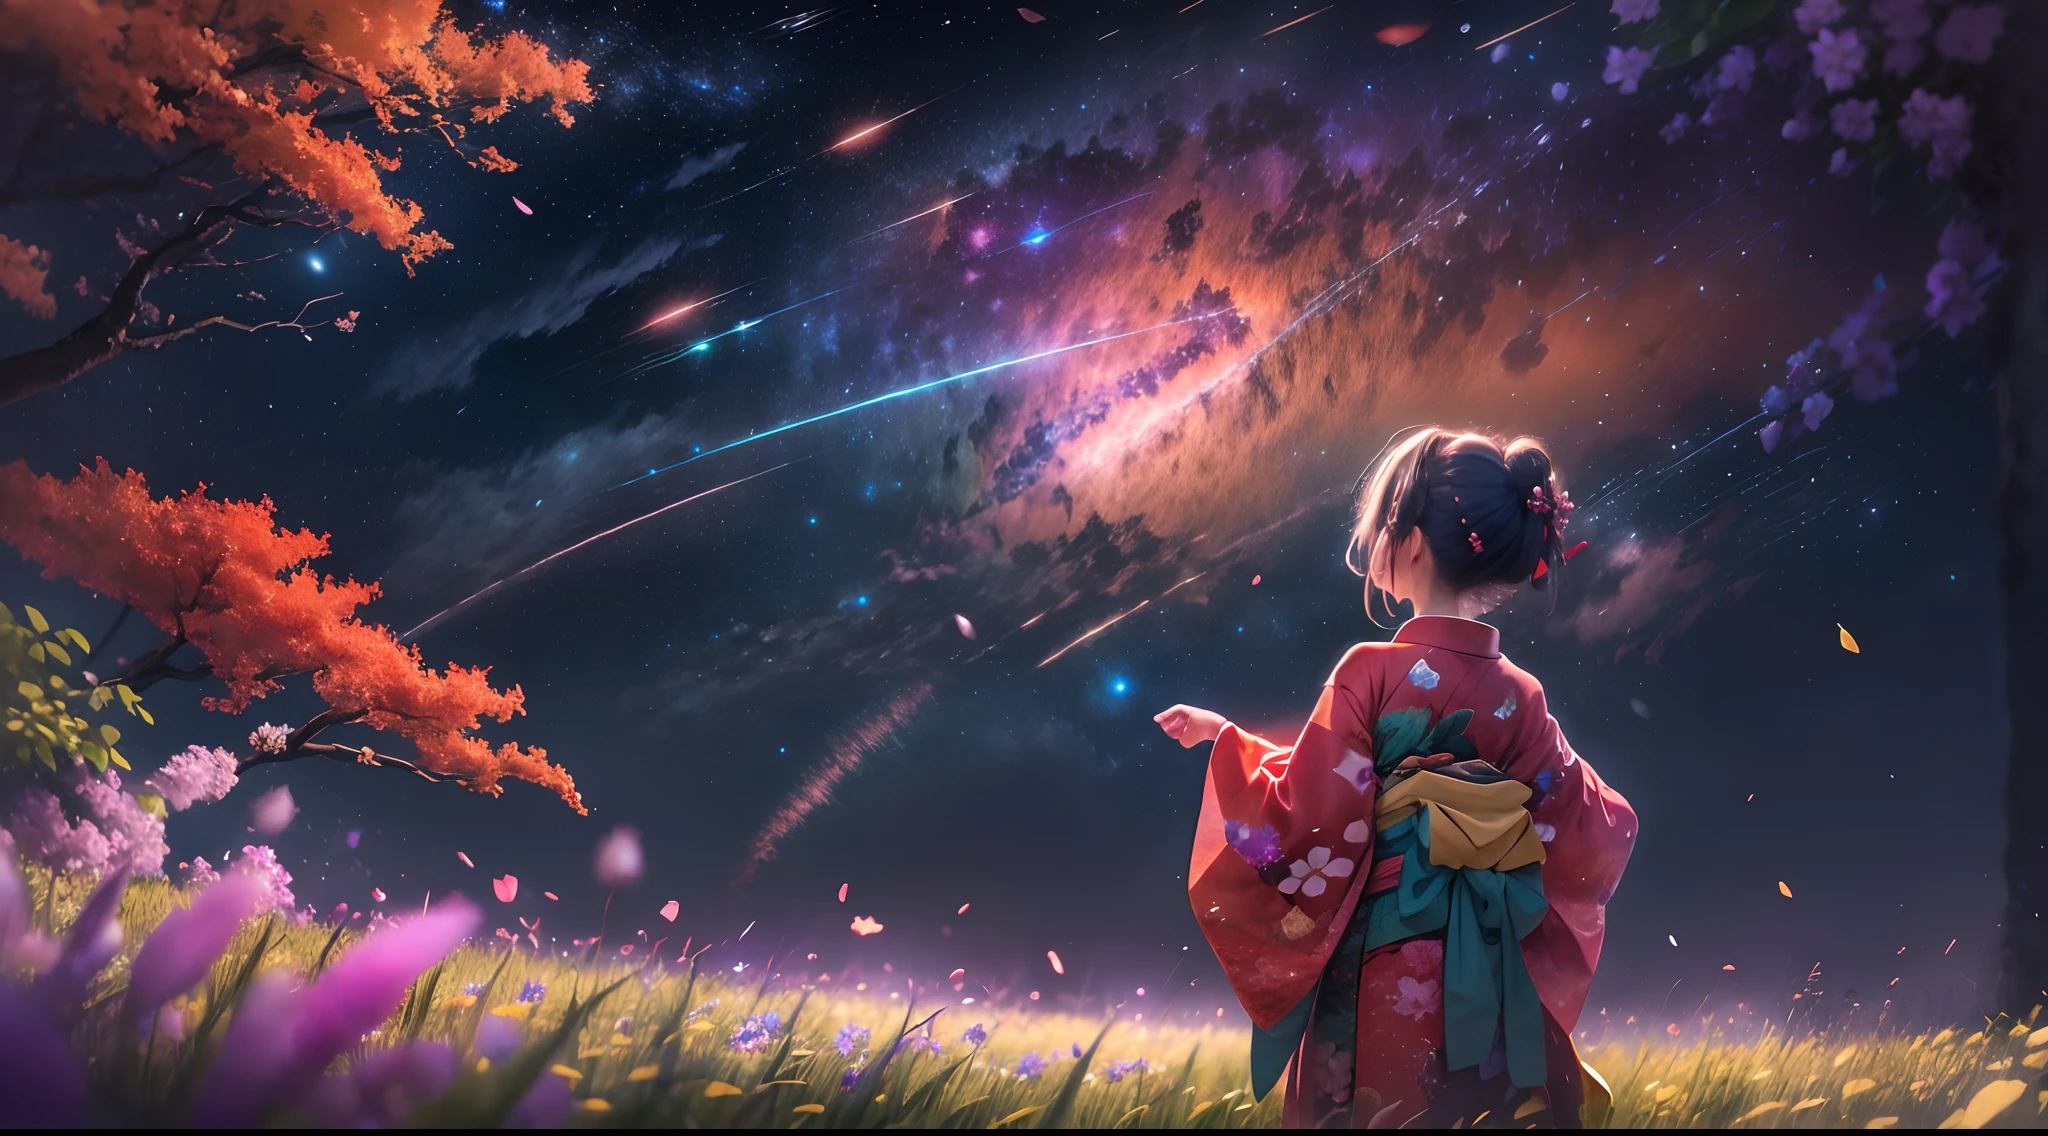 1女孩, distant girl wearing a kimono staring at the 星星, (缩小:1.1), (流星雨:1.2), (彗星:1.1), 你的名字, 低角度, 从后面, 北极光, 流星, 浴衣, 红色和服, 樱花, 站在田野里,最好的质量, 杰作,  云,丰富多彩的, 繁星点点,星星,